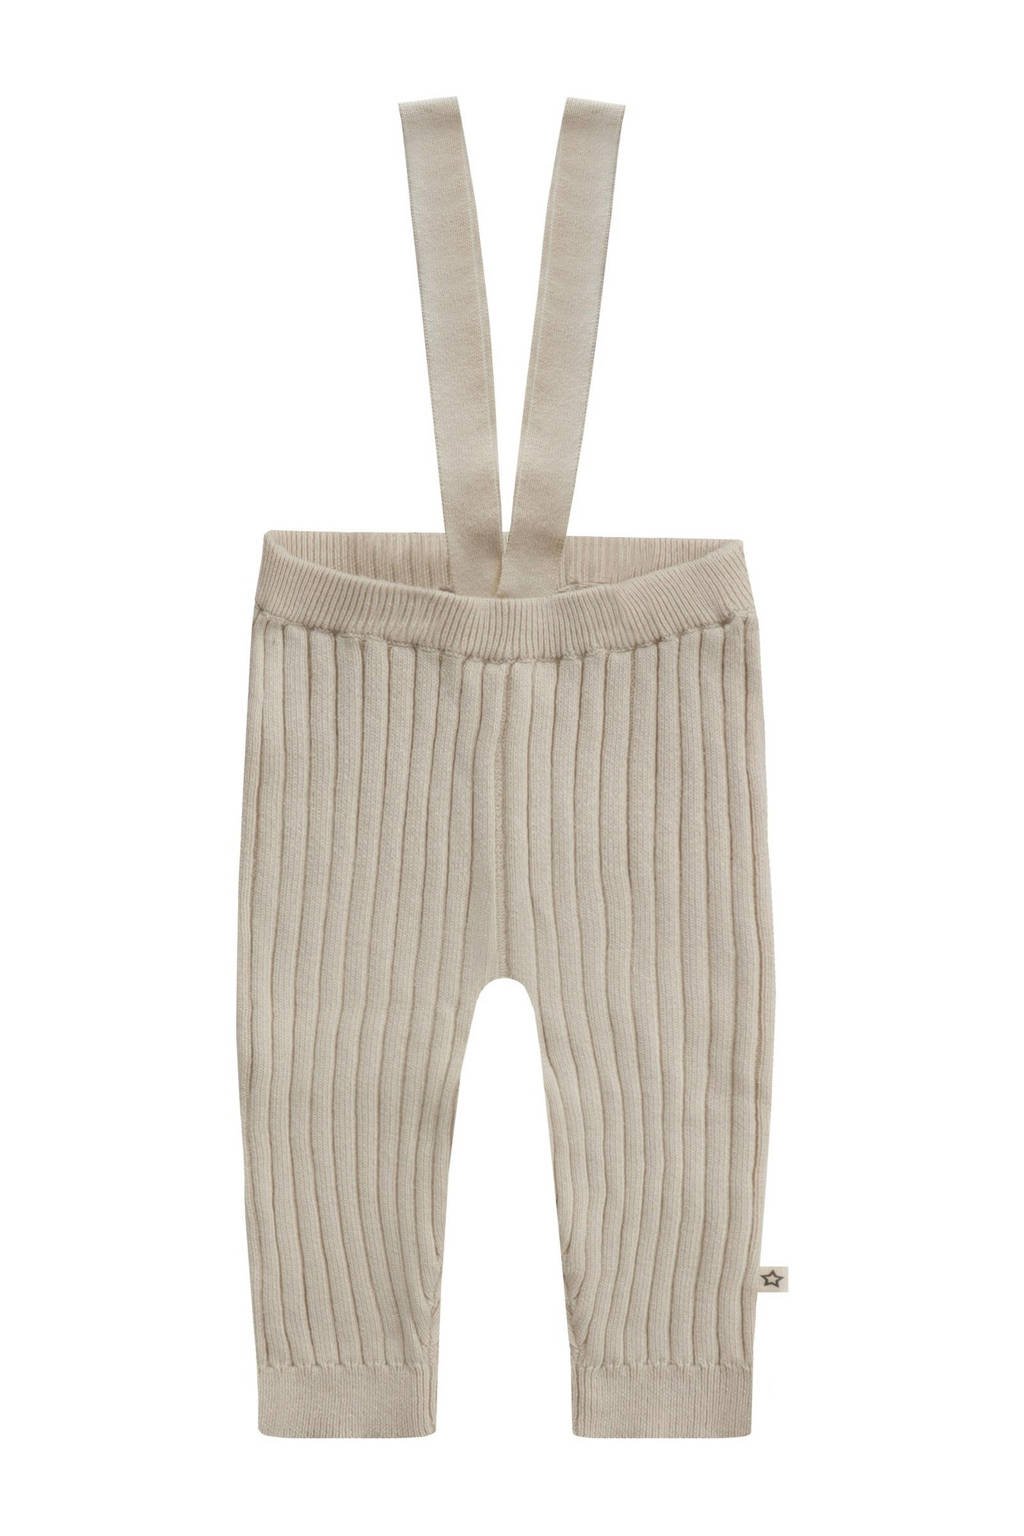 Zandkleurige jongens en meisjes Your Wishes broek bretels van katoen met regular fit, regular waist en knoopsluiting